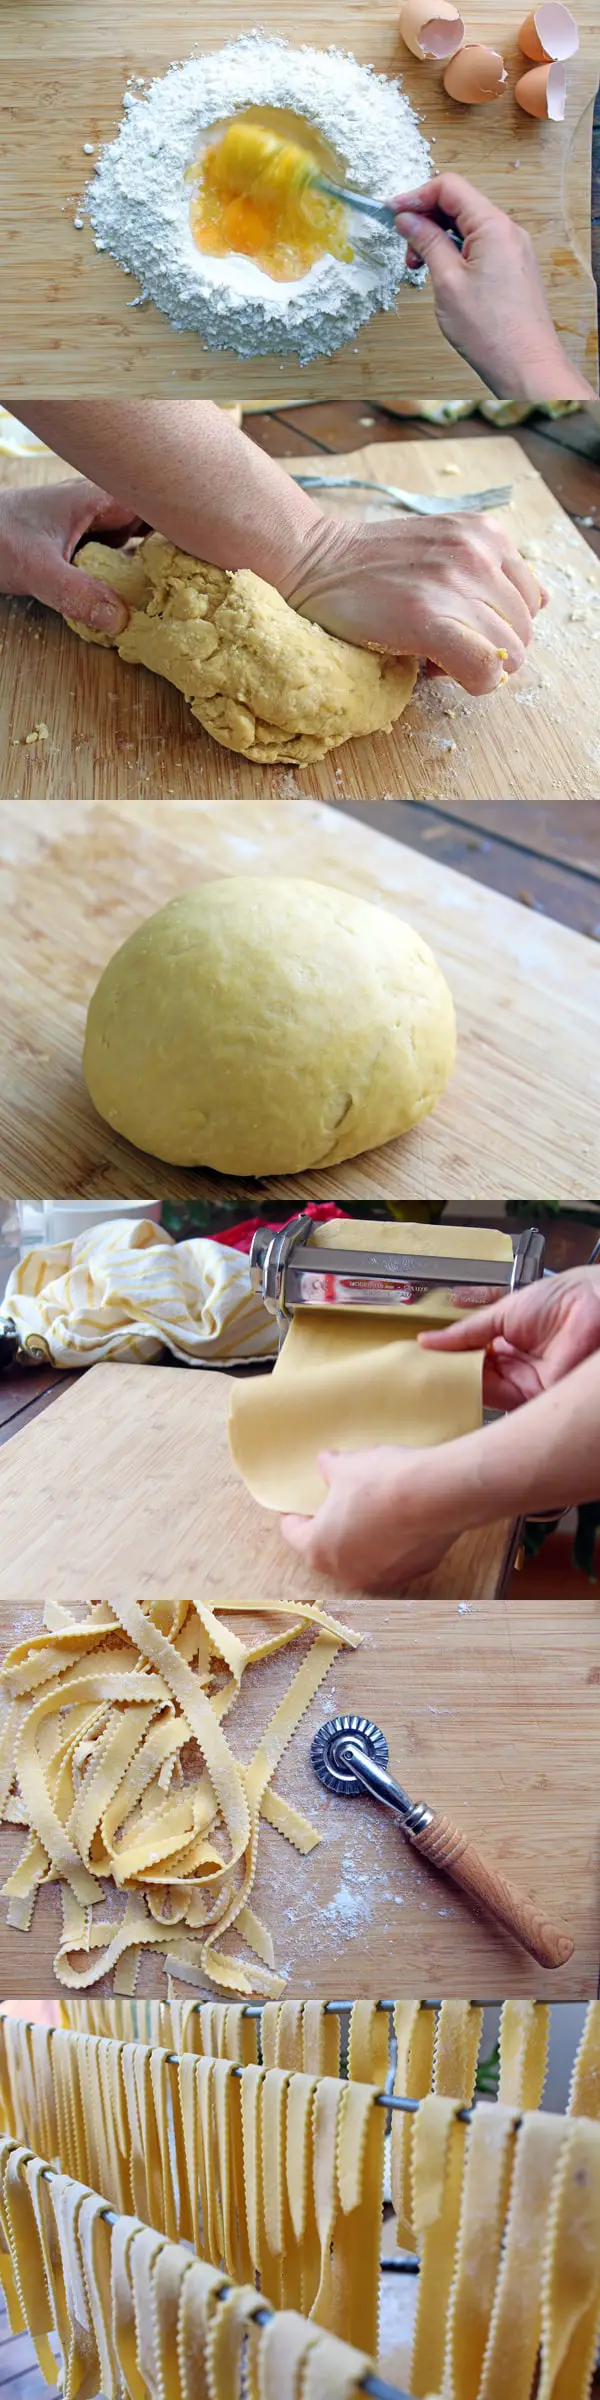 Como hacer pasta fresca